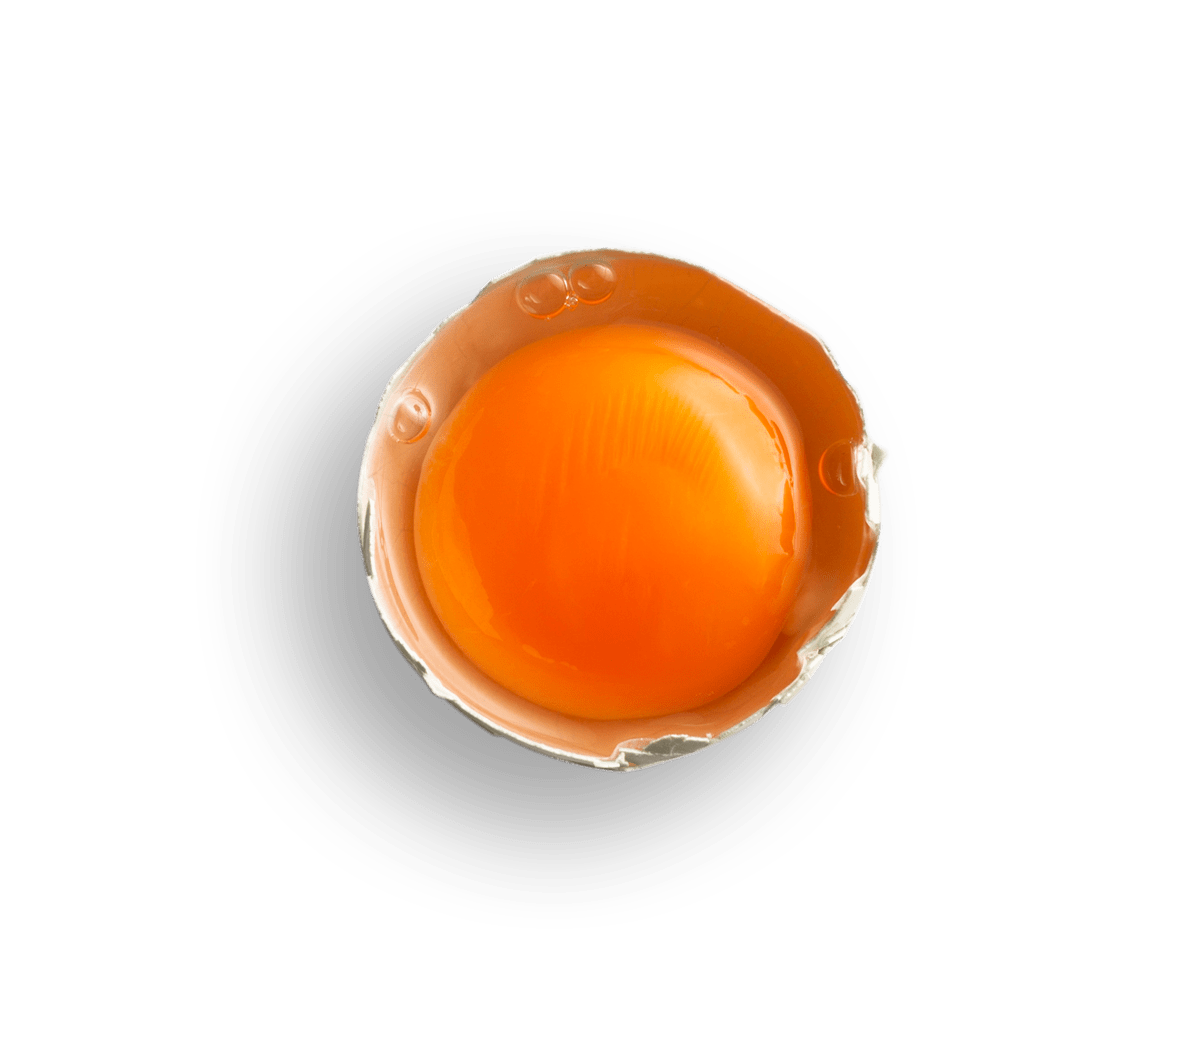 egg yolk